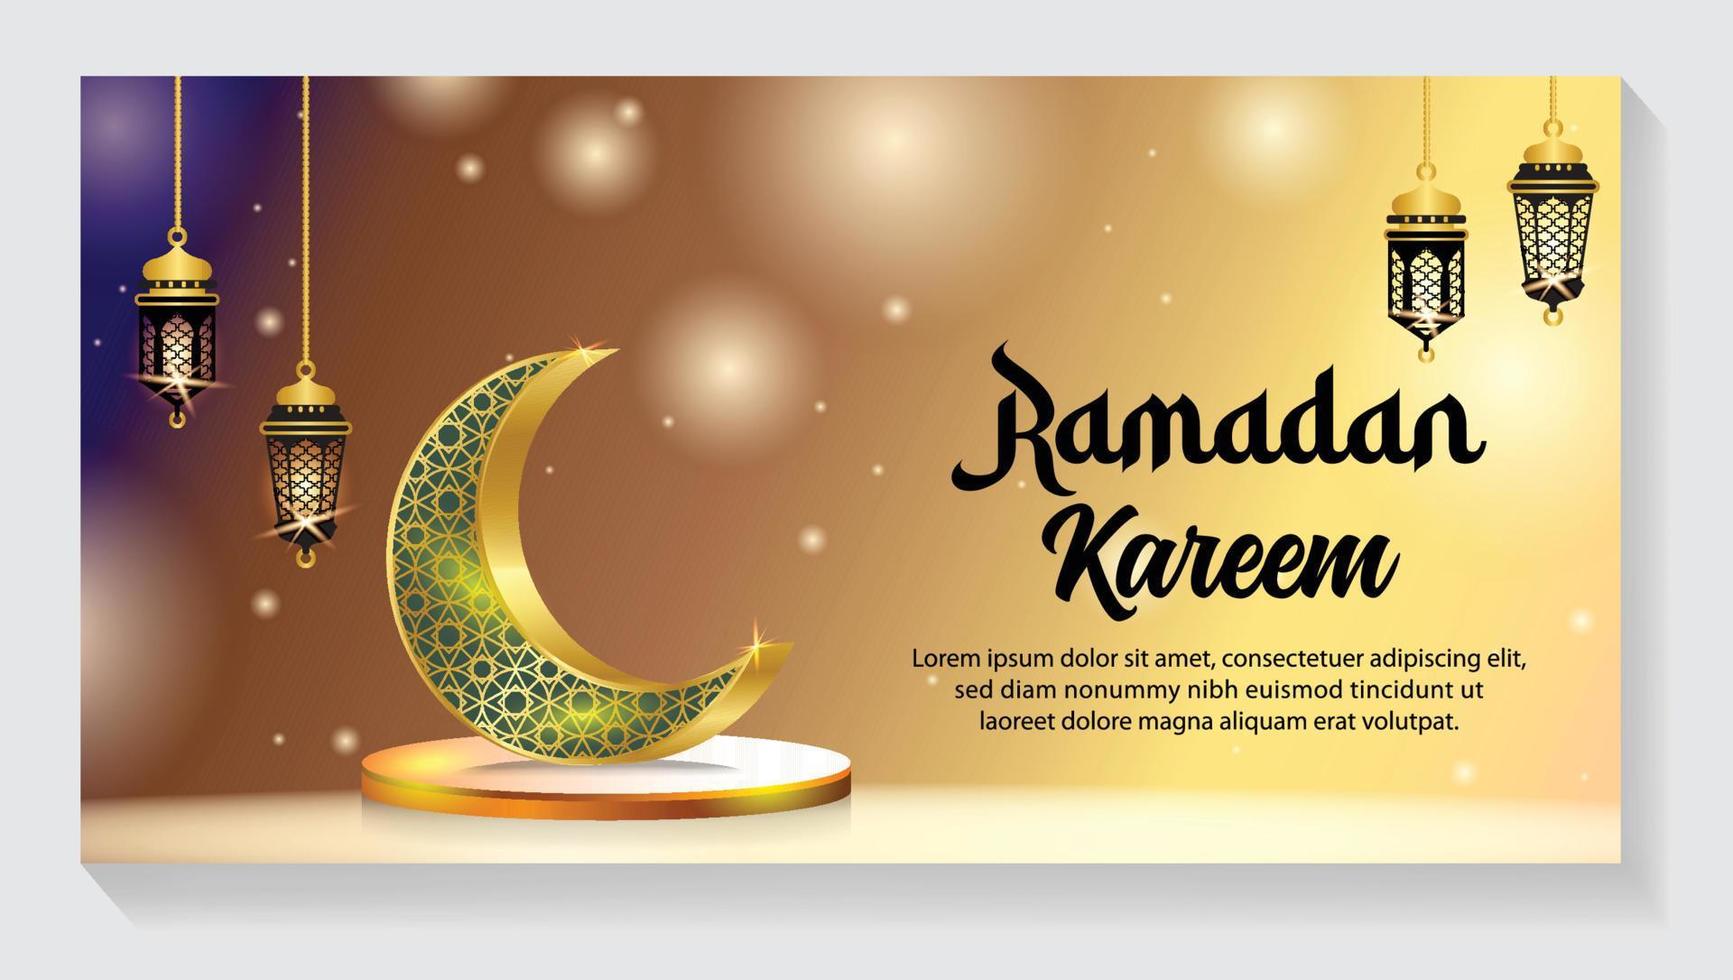 halve maan Islamitisch met lantaarn voor Ramadan kareem. gouden voor de helft maan, vector illustratie ontwerp